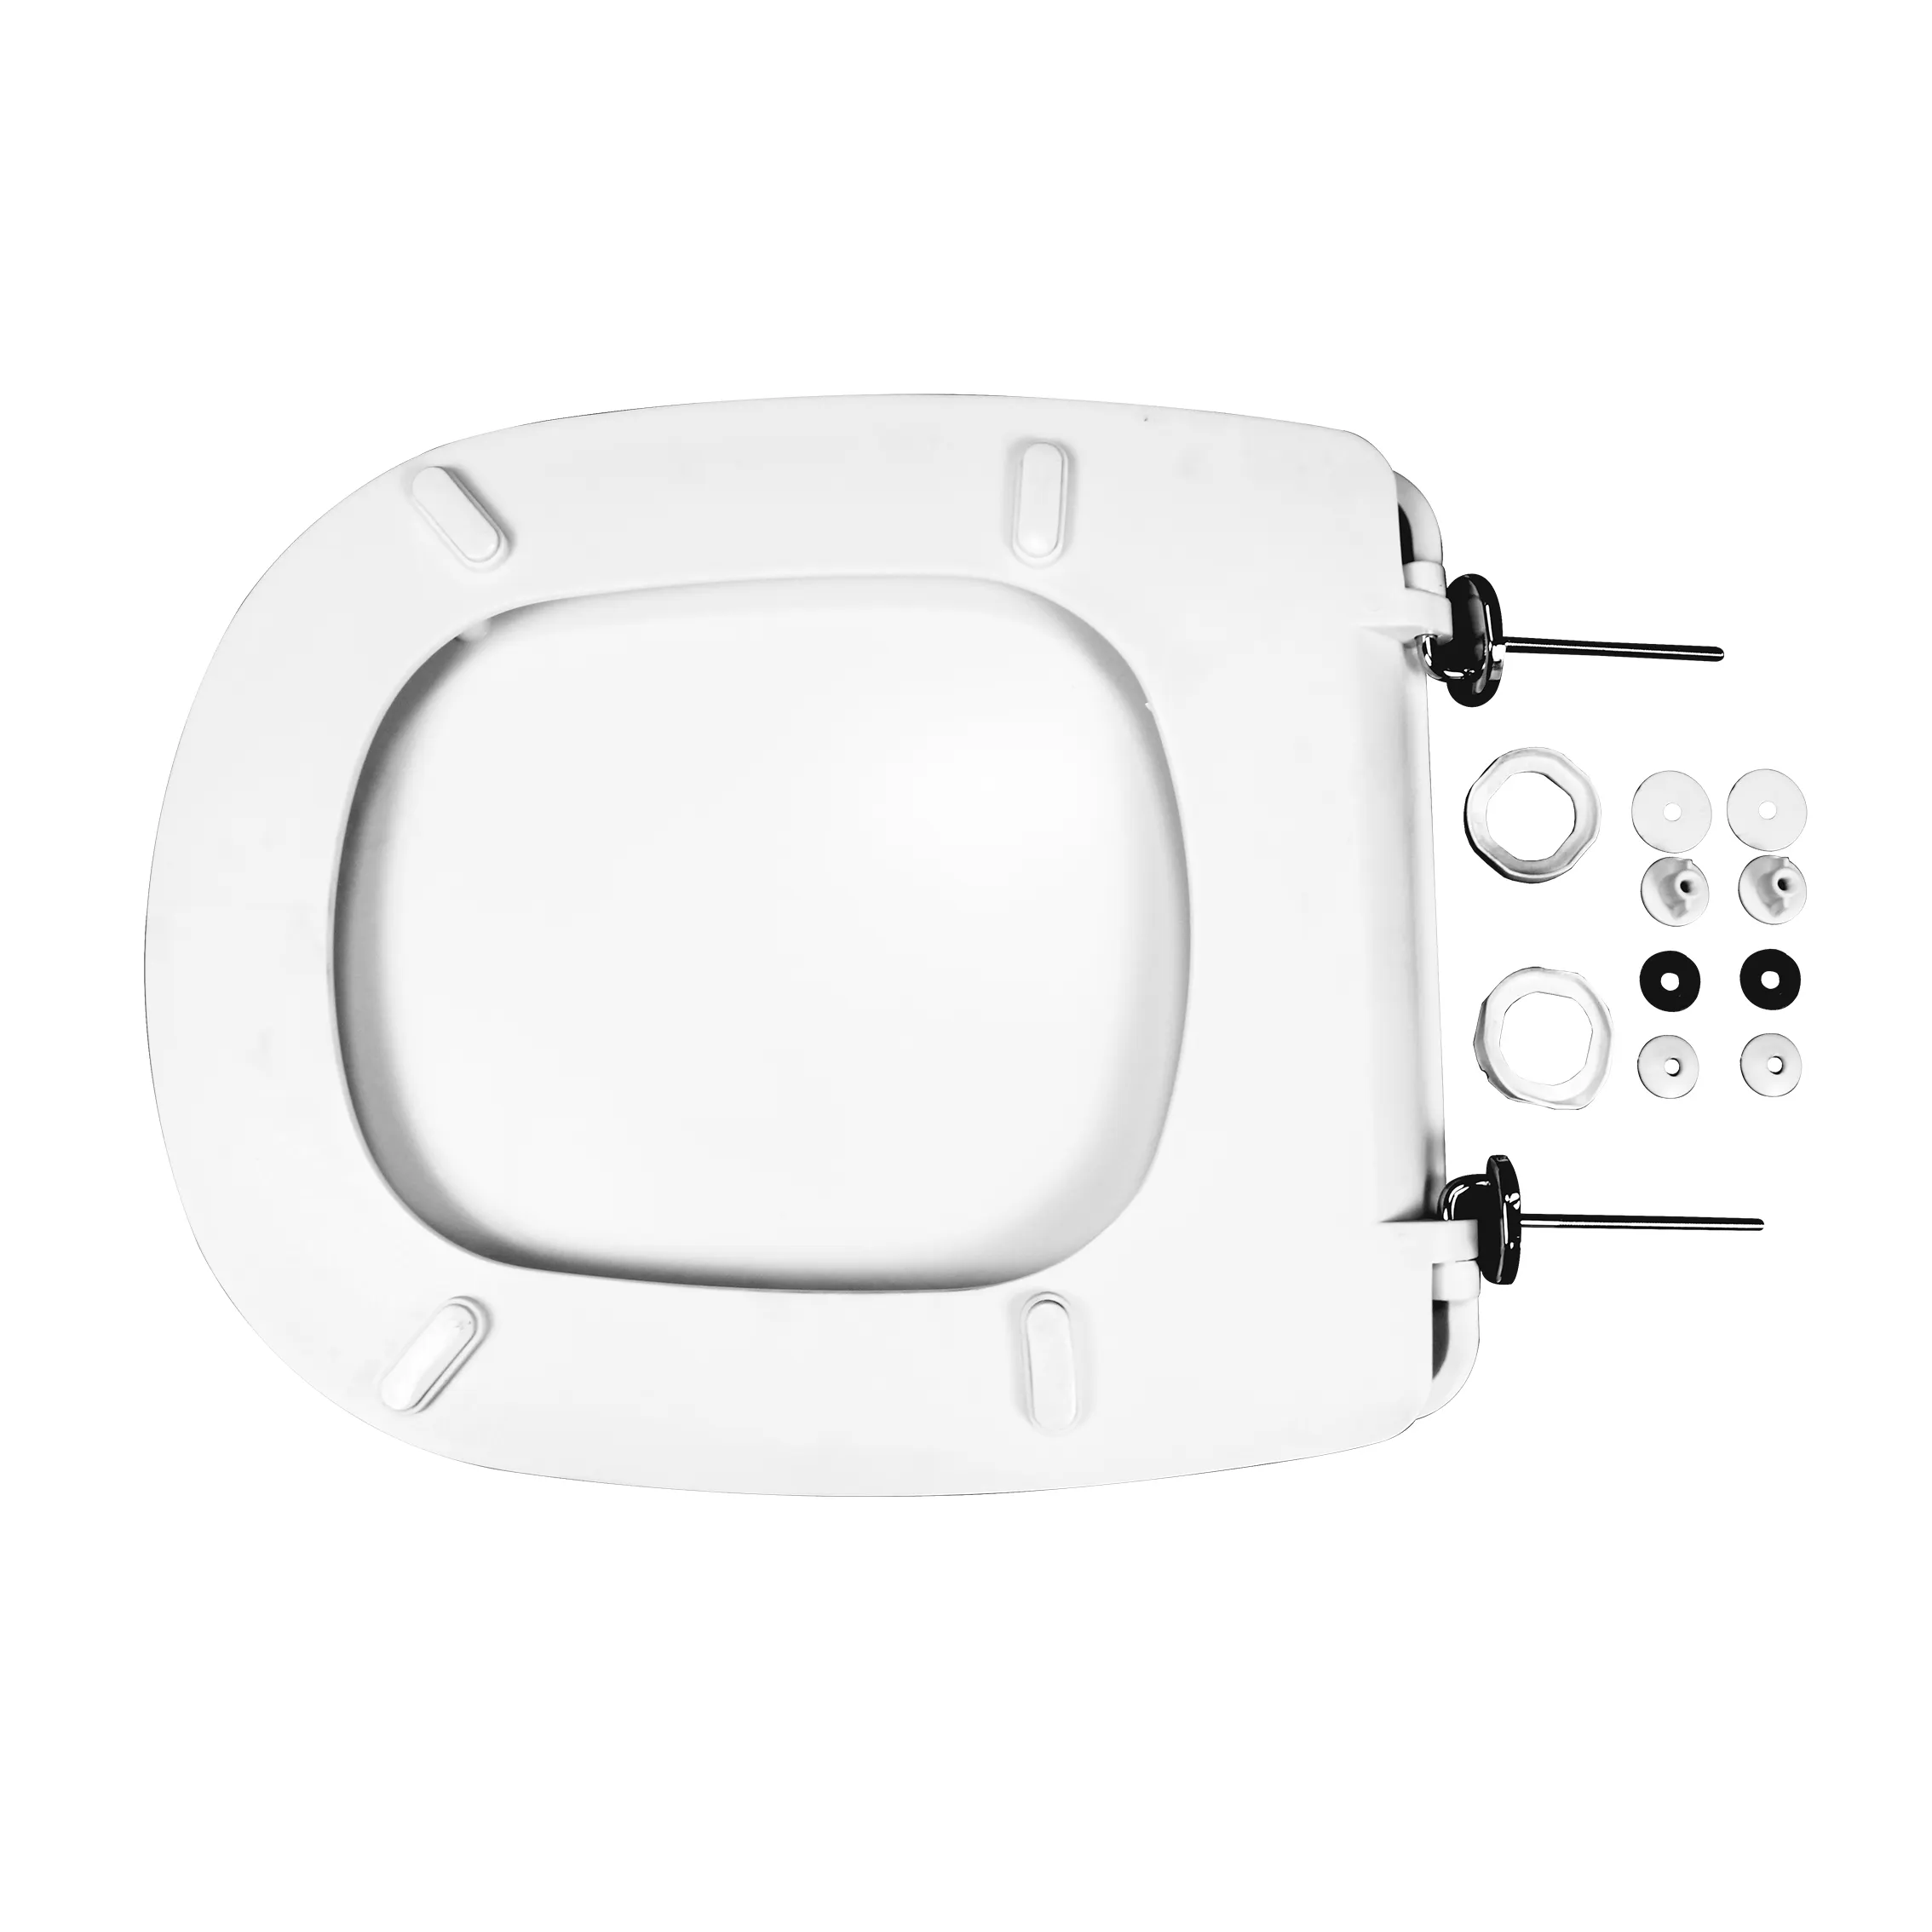 MT-811 chinesische weiße Farbe Schönheit Kunststoff wc europäischen Stil Toiletten sitz bezug